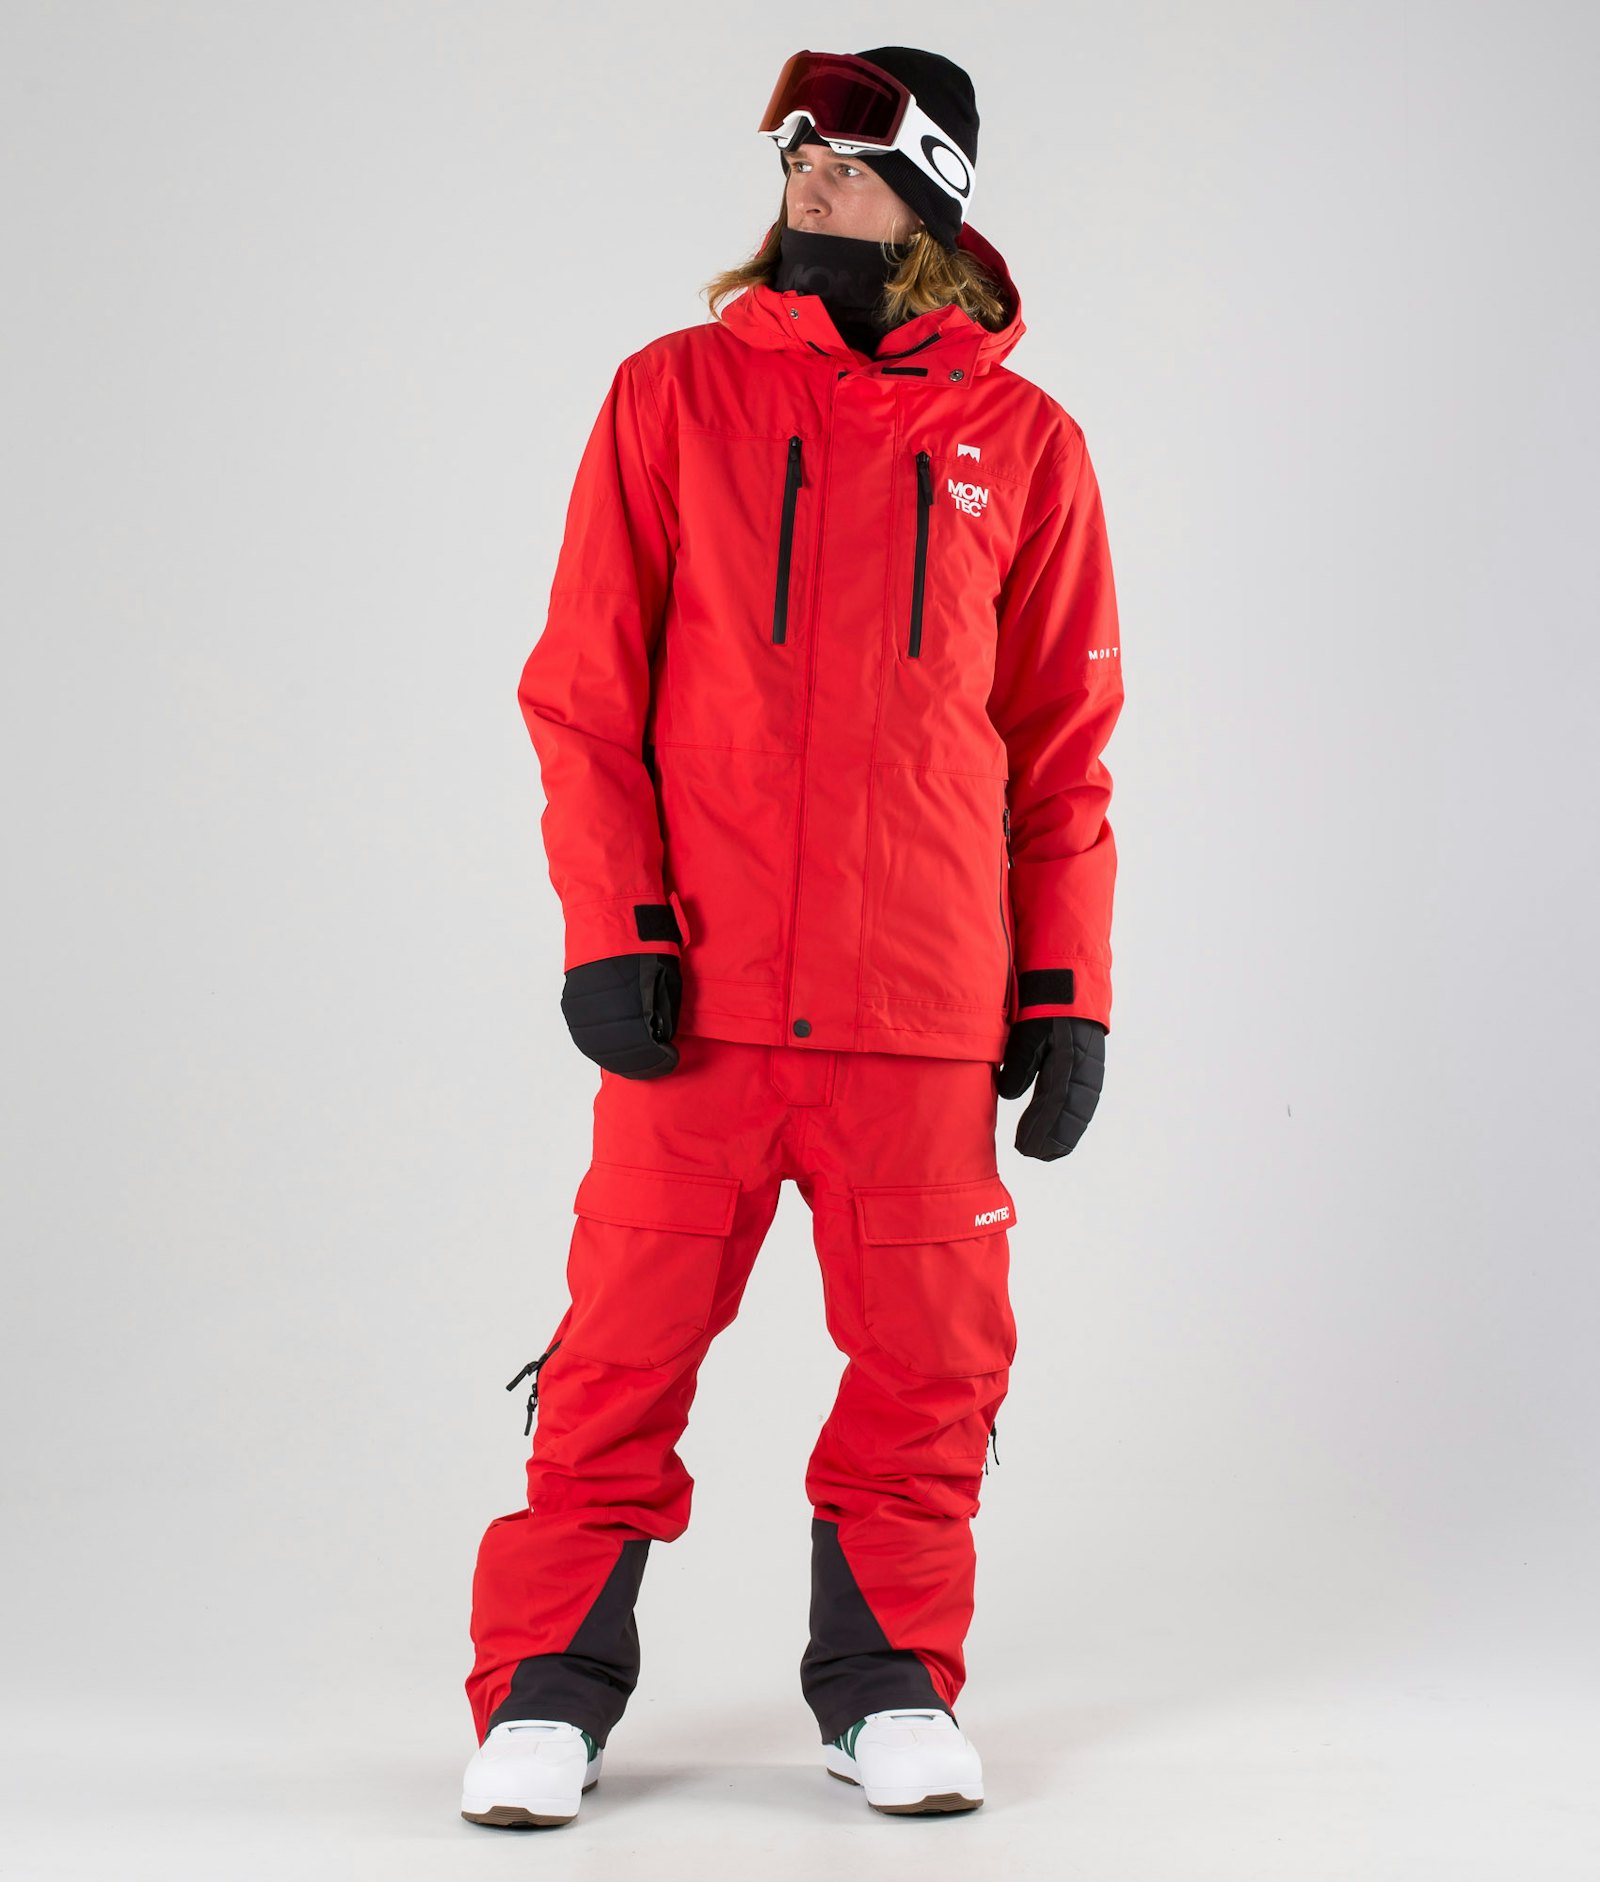 Fawk 2019 Snowboard Jacket Men Red Renewed